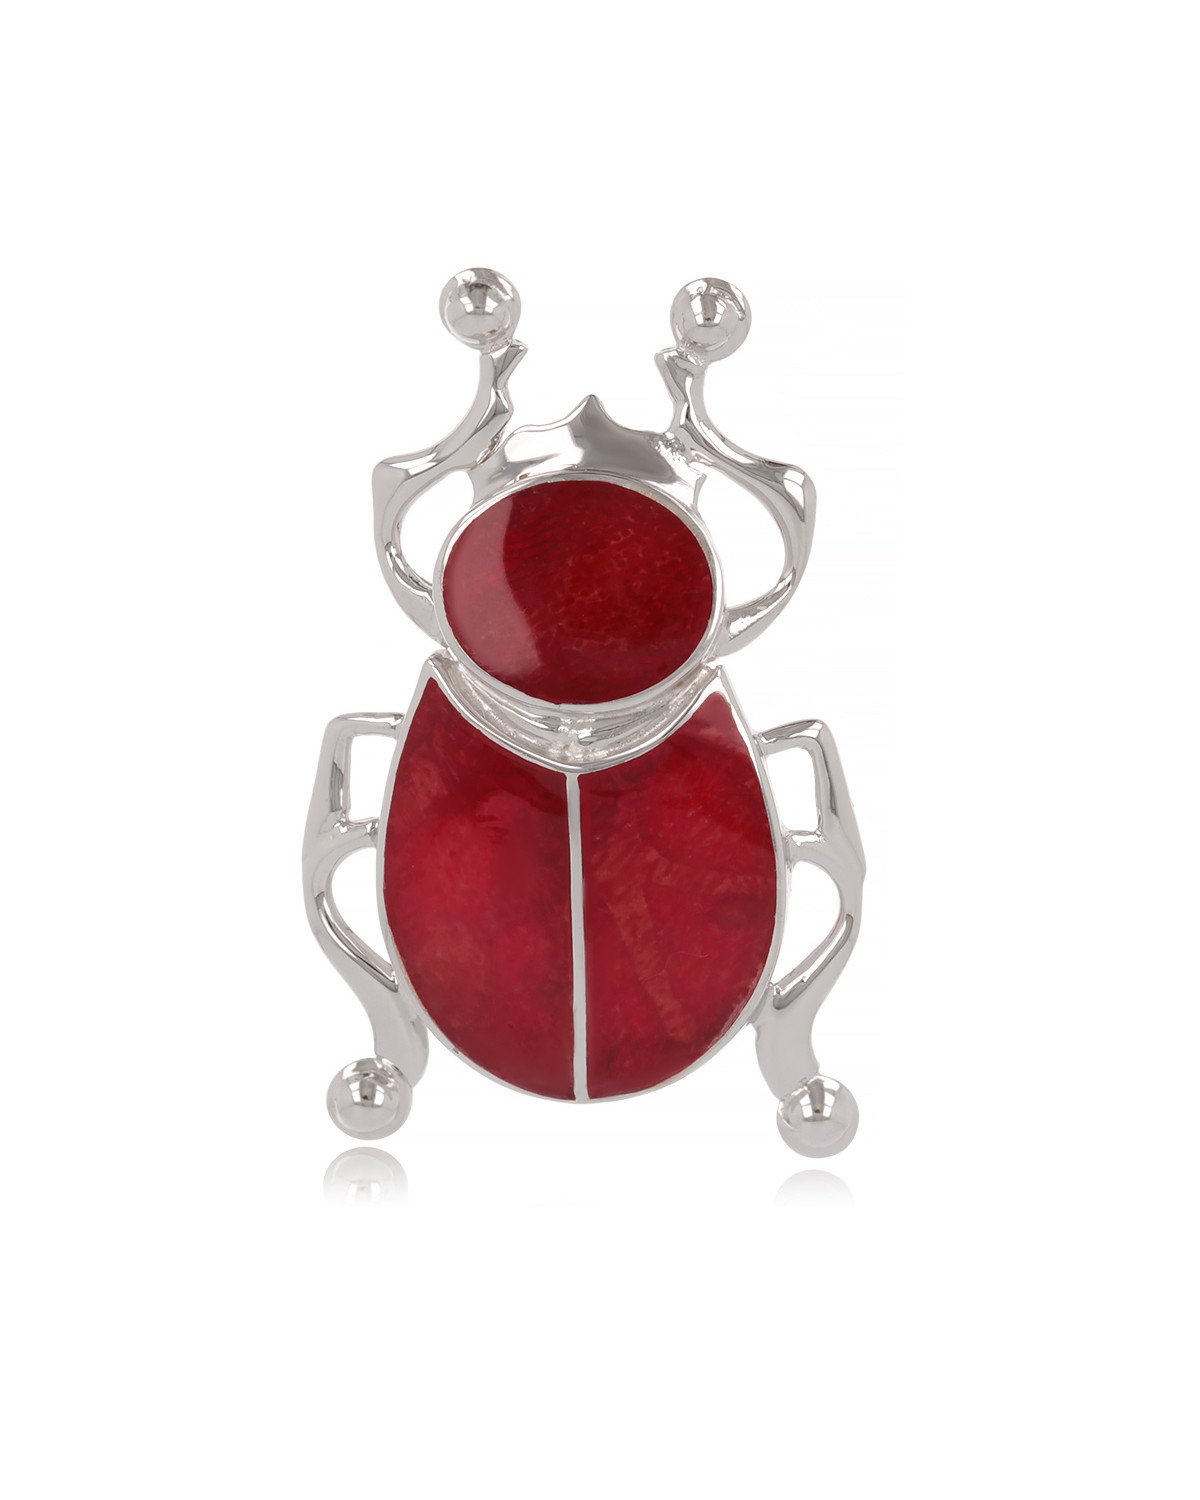 Pendentif figurine scarabée Corail Argent 925-000 rouge